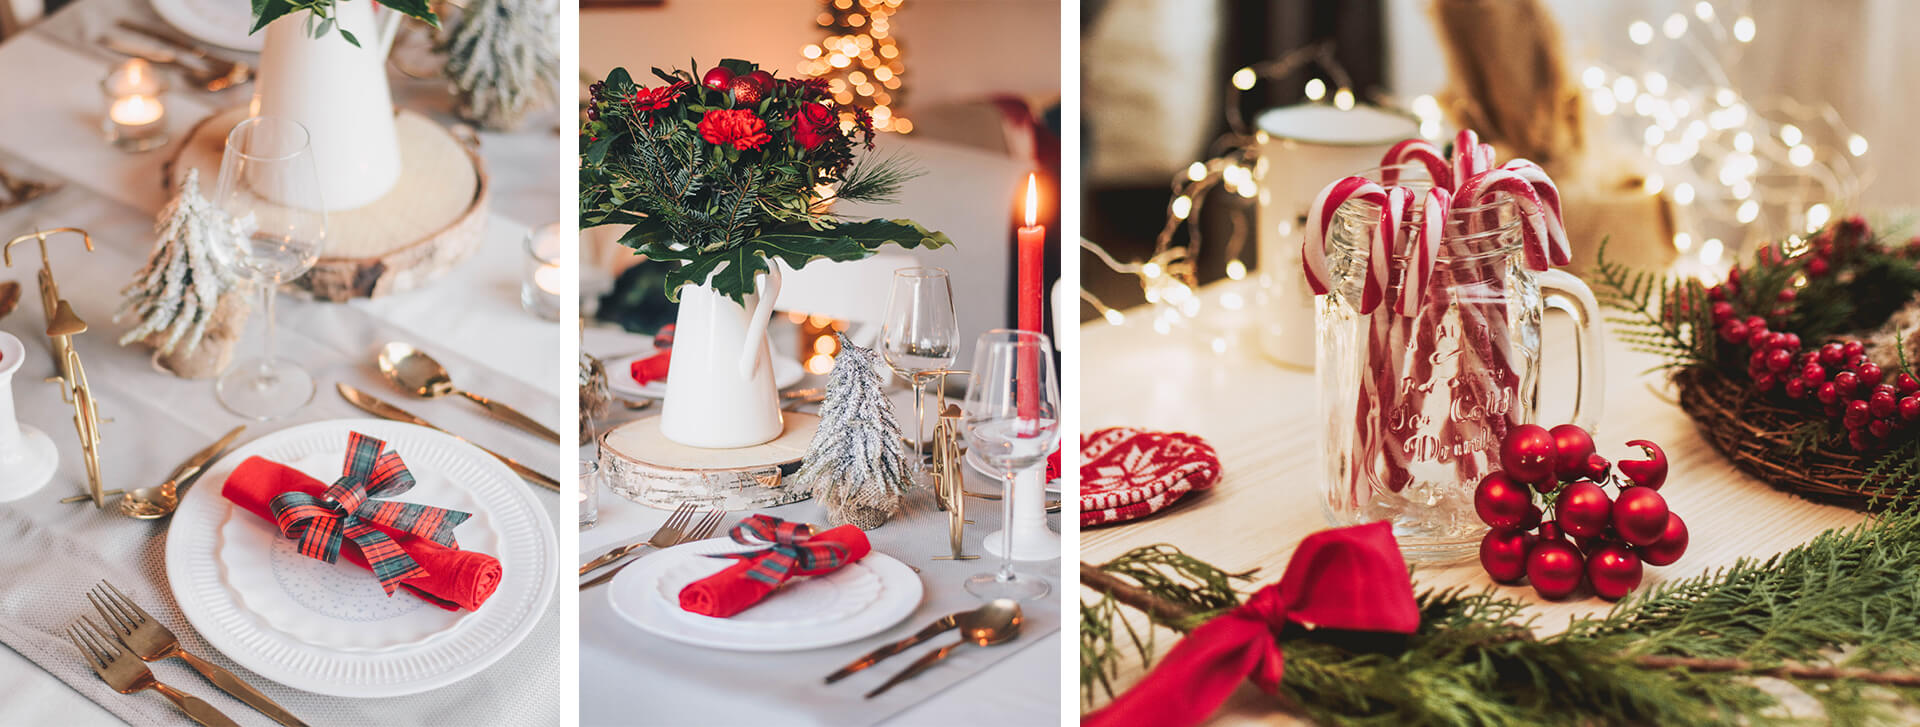 Jak pięknie przystroić świąteczną kolację? Dekoracje stołu na Boże Narodzenie